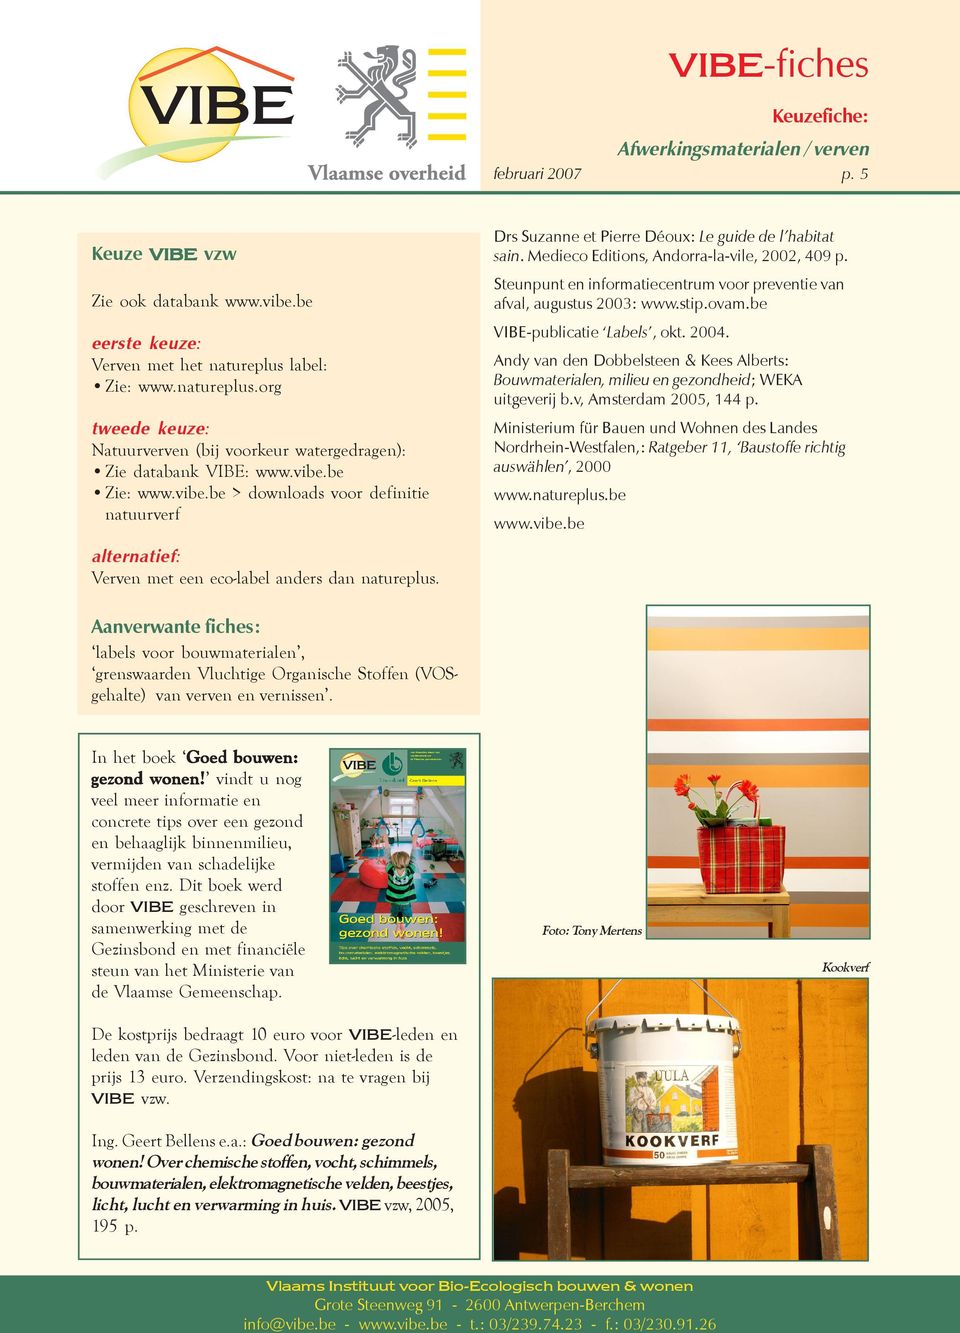 Medieco Editions, Andorra-la-vile, 2002, 409 p. Steunpunt en informatiecentrum voor preventie van afval, augustus 2003: www.stip.ovam.be VIBE-publicatie Labels, okt. 2004.